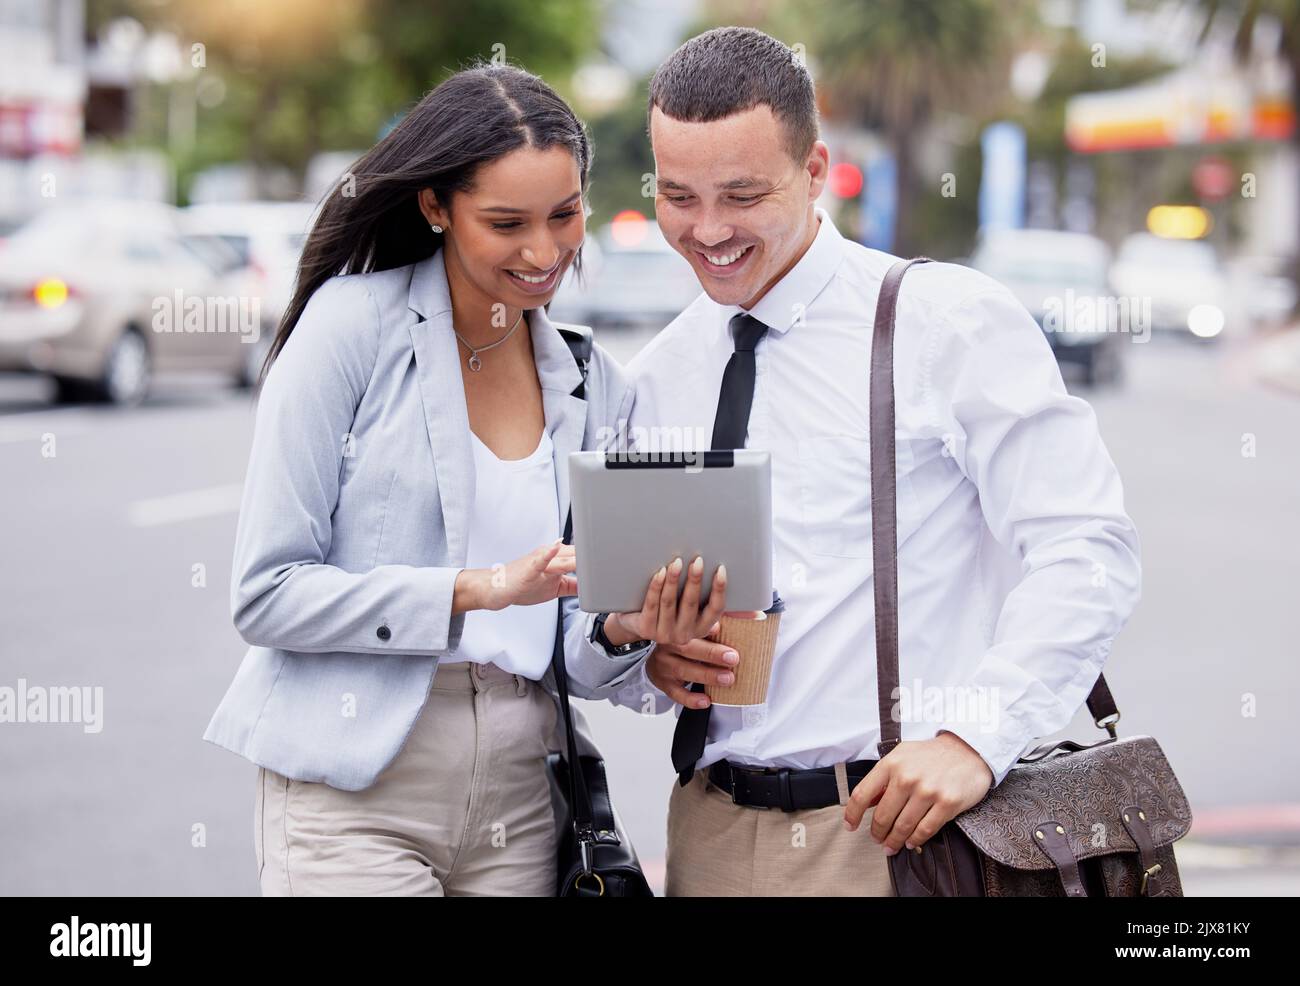 5G Tablet-Internet und Social Media Live-Streaming beobachten eines Paares nach der Arbeit in einer Stadt. Glückliche Arbeitsfreunde oder -Partner mit einem Lächeln, das einen anschaut Stockfoto